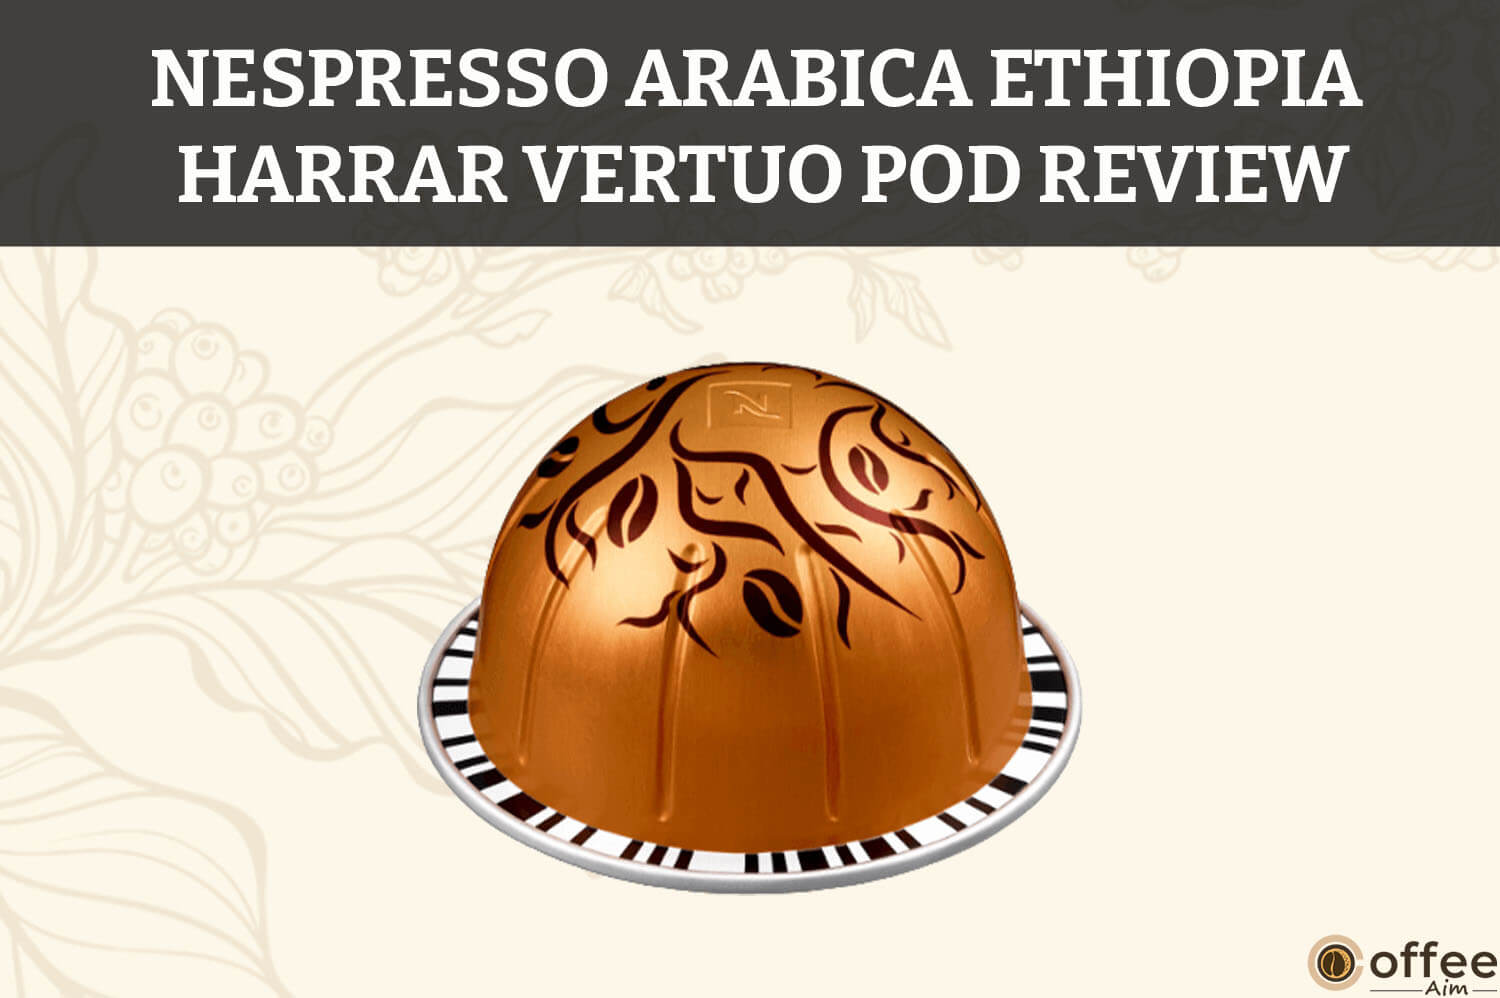 Featured image for the article "Nespresso Arabica Ethiopia Harrar Vertuo Pod Review"